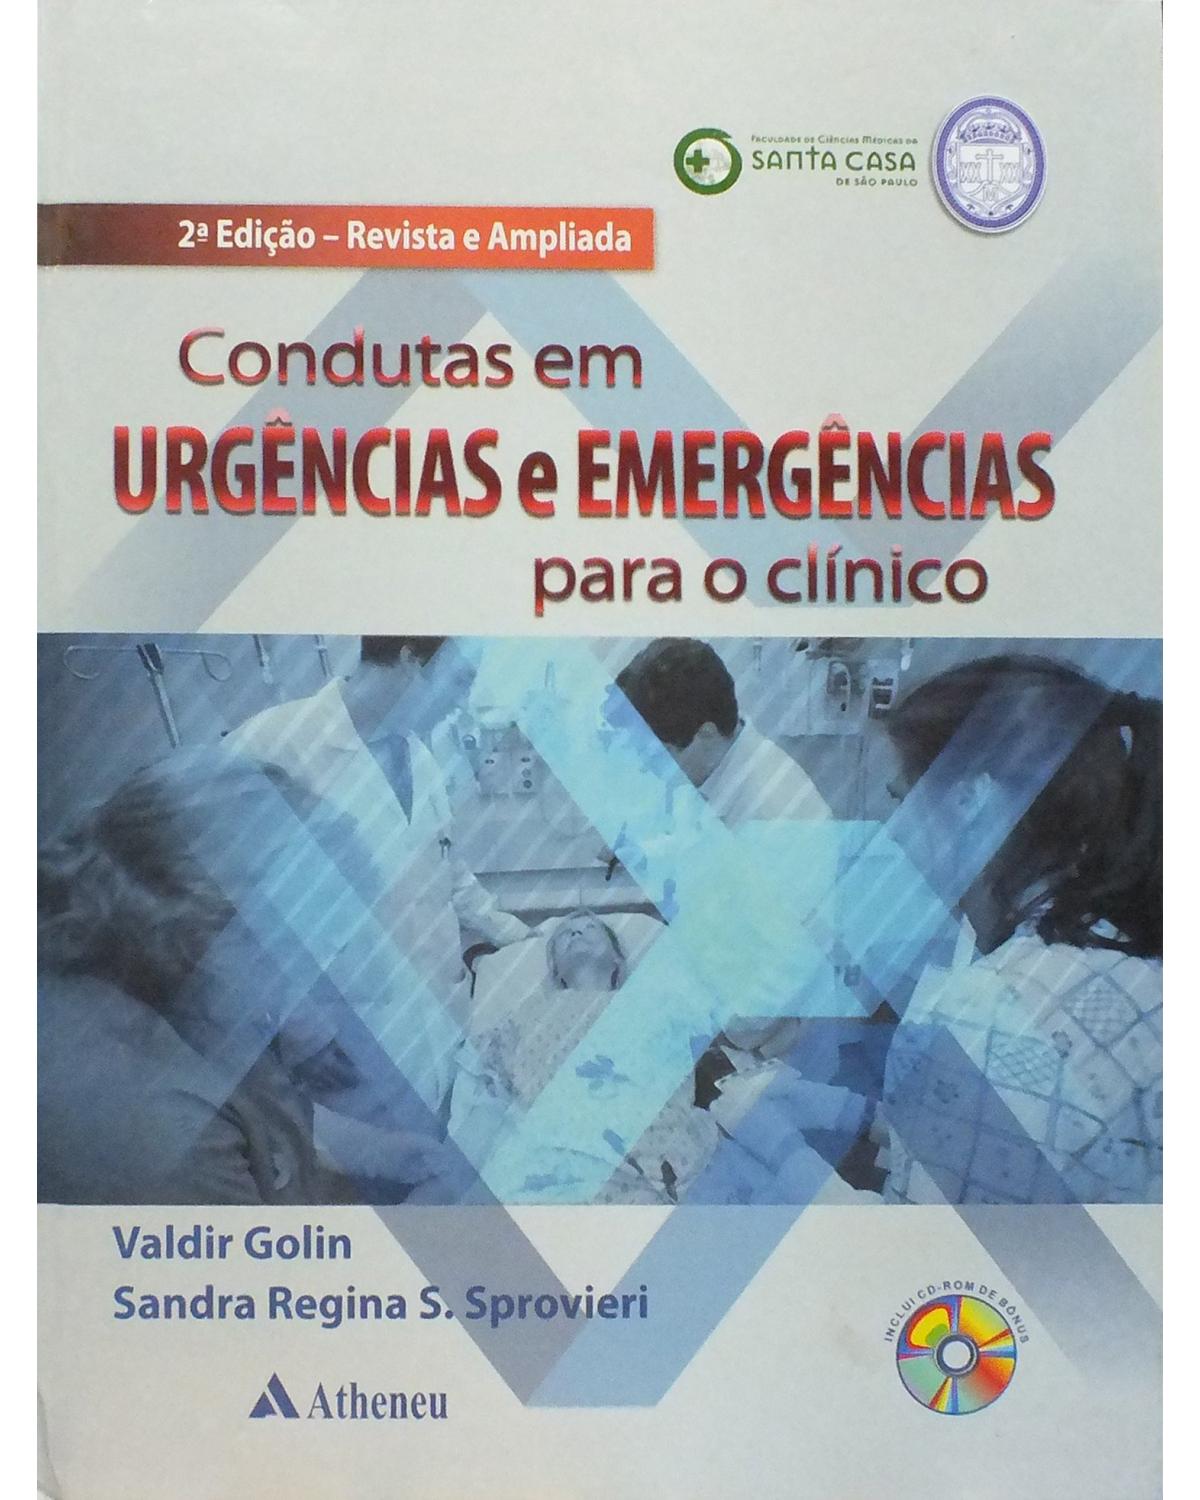 Condutas em urgências e emergências para o clínico - 2ª Edição | 2012